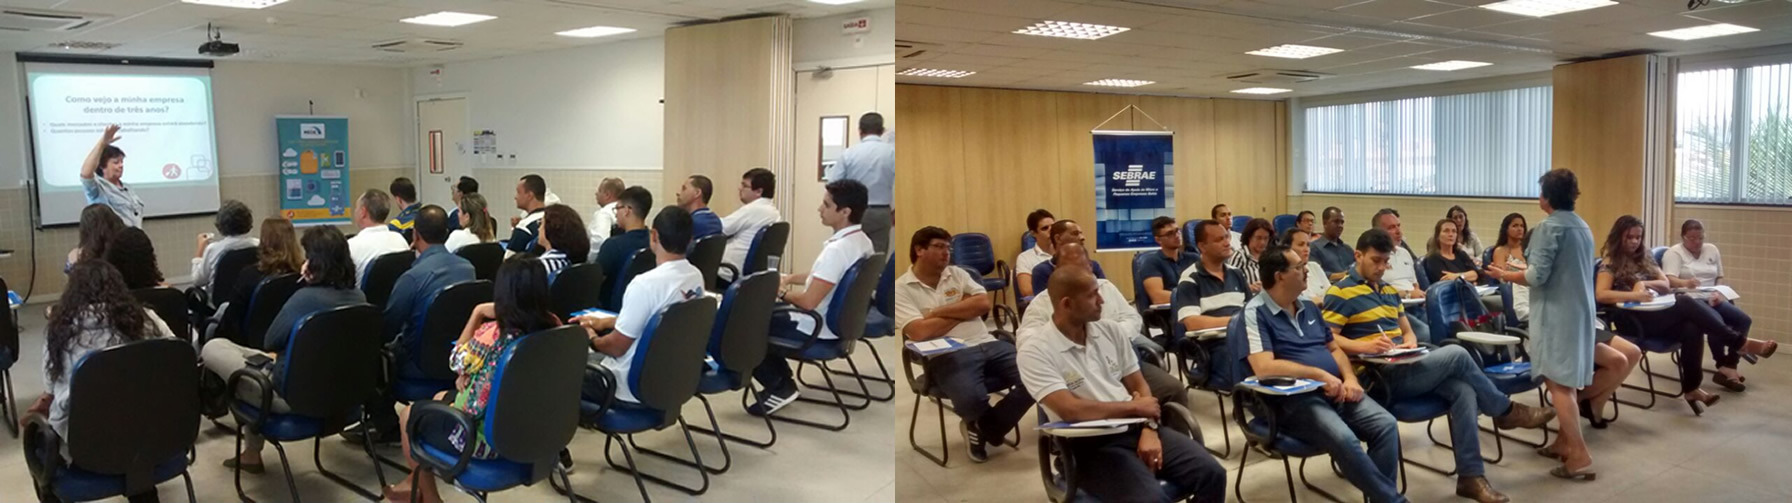 Sebrae realiza workshop para gestão empresarial em Porto Seguro 24